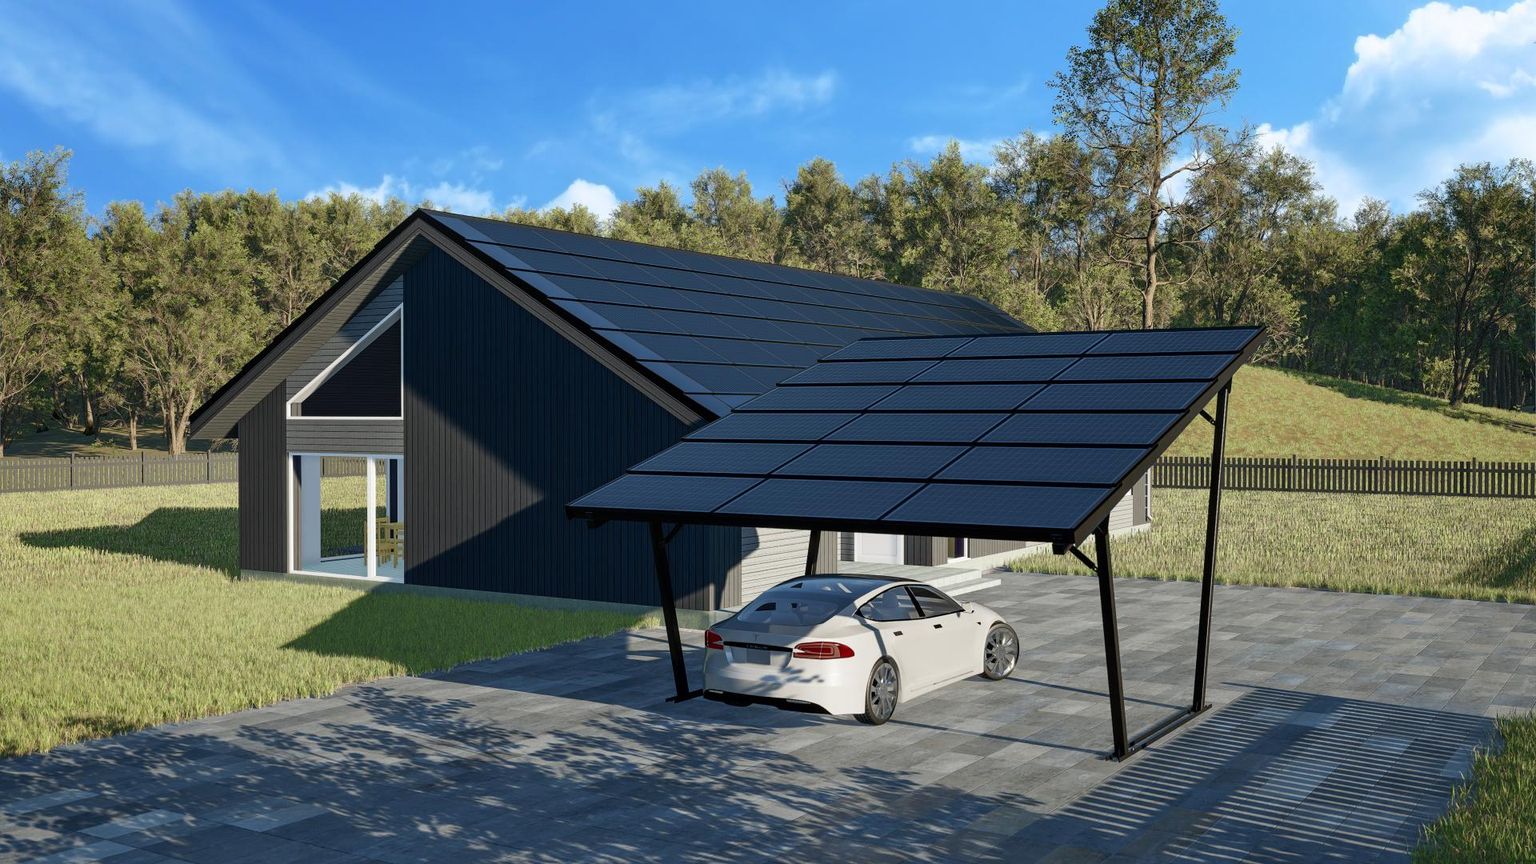 Sel aastal tõi Solarstone turule autovarjualused, mis on võimelised päikeseenergia abil elektriautosid toitma. Toode on nii uus, et aprilli alguseks seda veel kuhugi paigaldatud polnud, kuid välja võiks see maja kõrval näha seesugune.